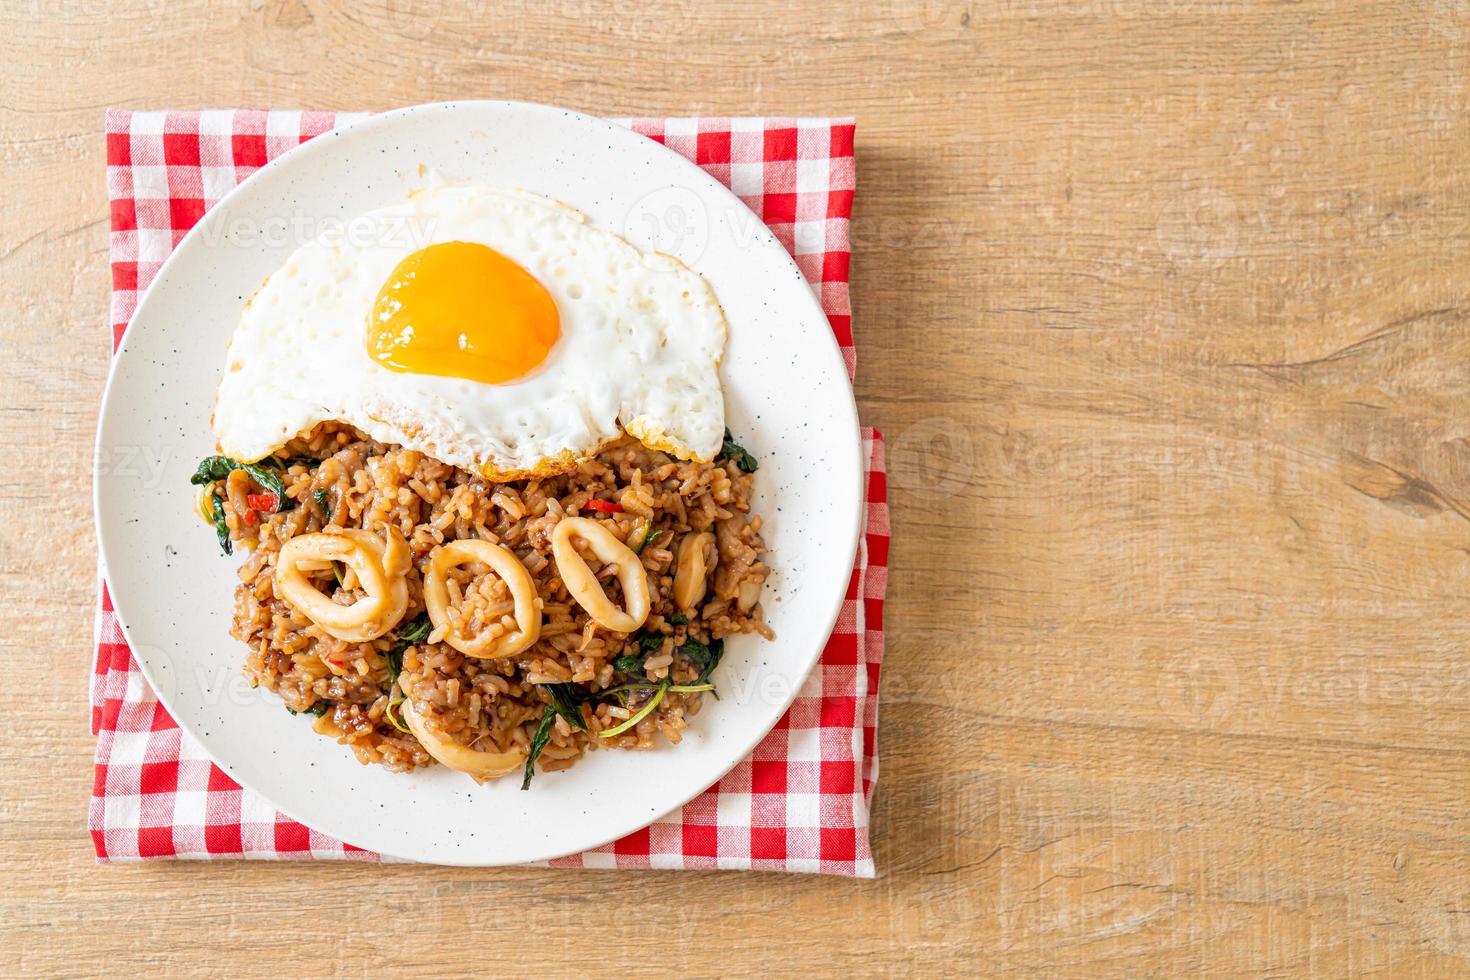 arroz frito con calamares y huevo frito cubierto de albahaca al estilo tailandés foto